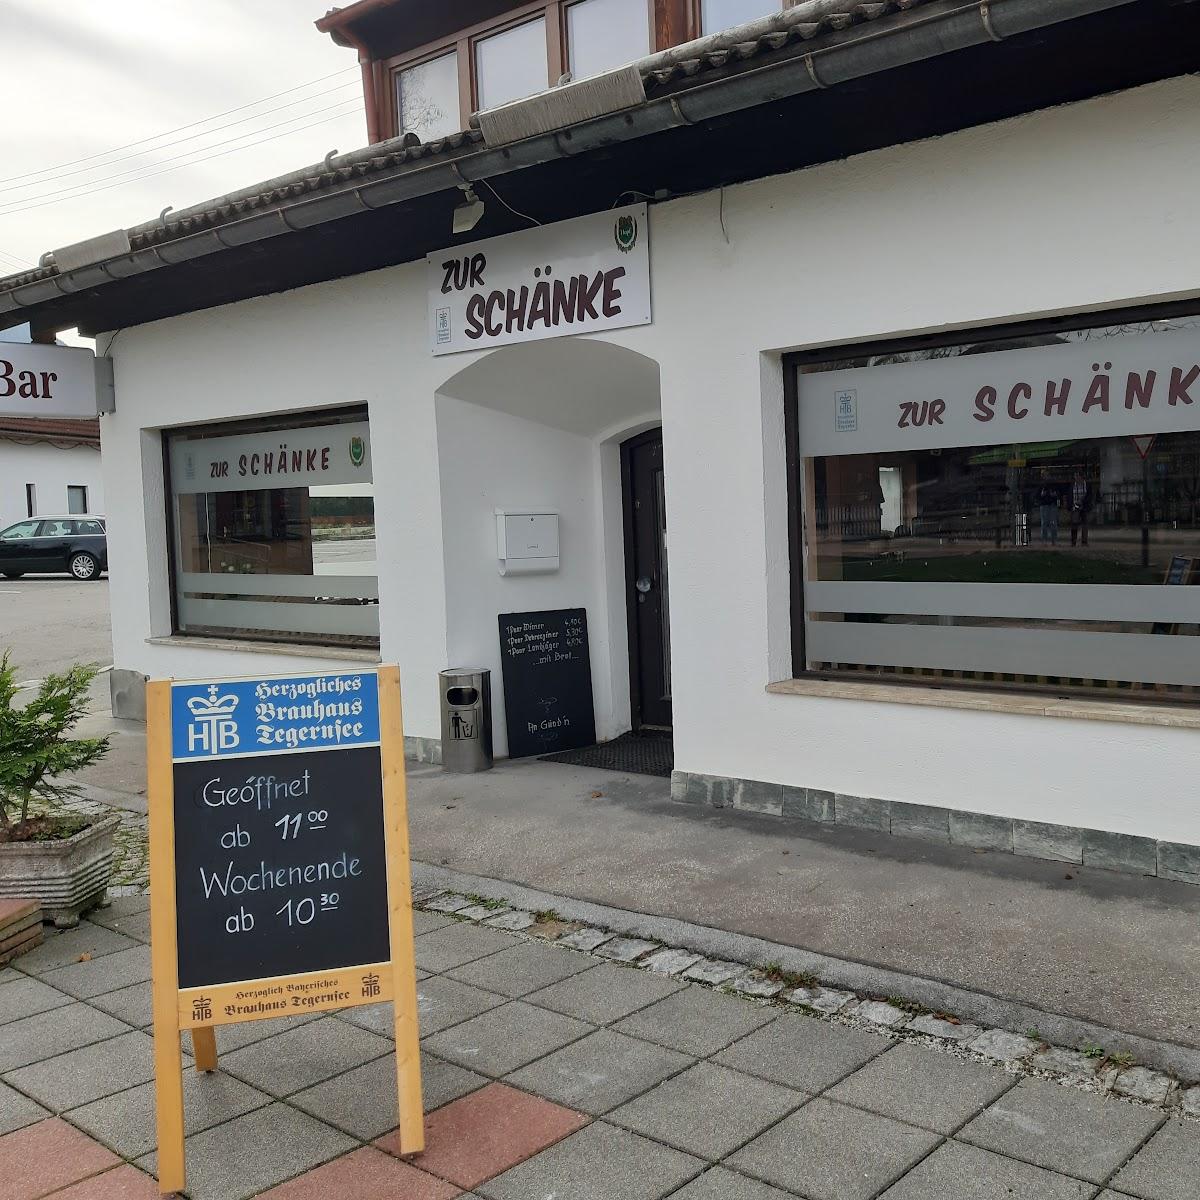 Restaurant "ZUR SCHÄNKE" in Bad Wiessee